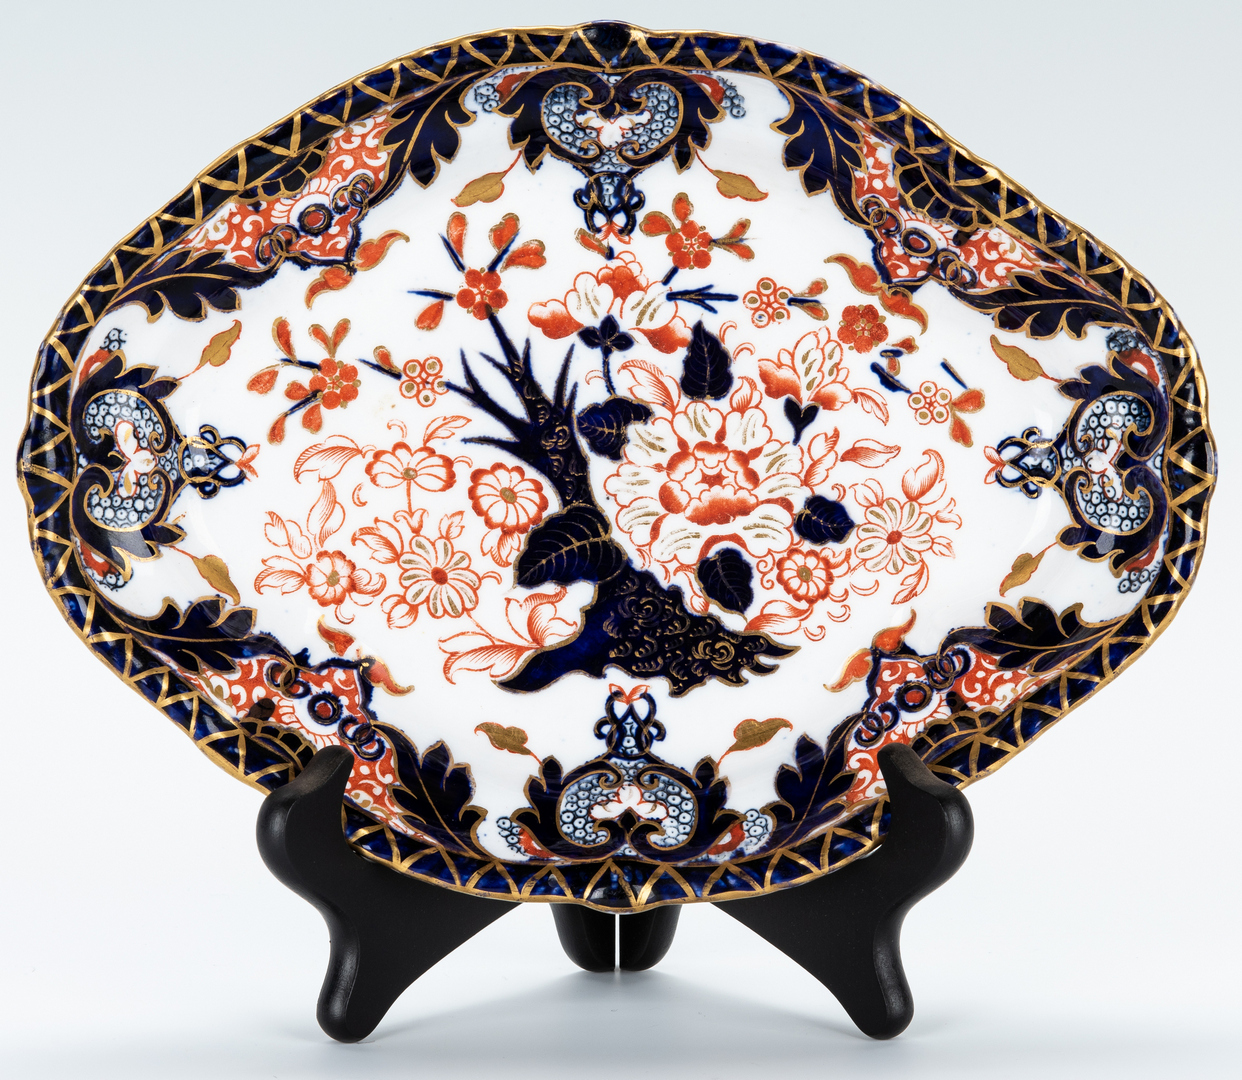 Lot 457: 10 Pcs. English Porcelain, incl. Royal Crown Derby Imari Pattern